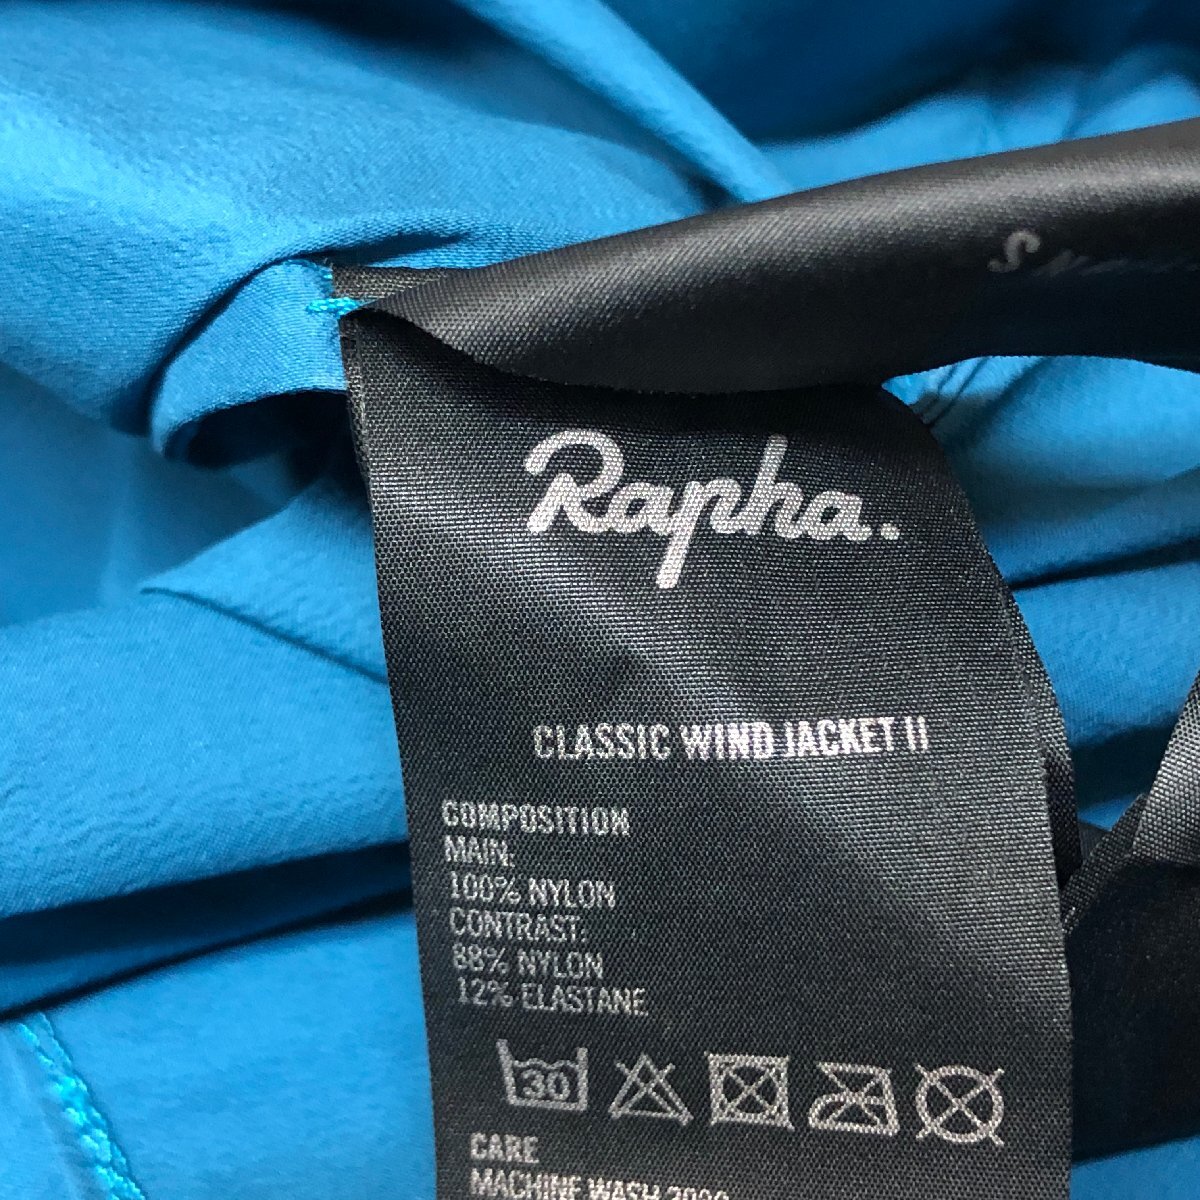 m001 F(30) Rapha ラファ クラシックウィンドジャケット2 メンズMサイズ ブルー ウィンドブレーカー Classic Wind JacketII サイクルウェアの画像7